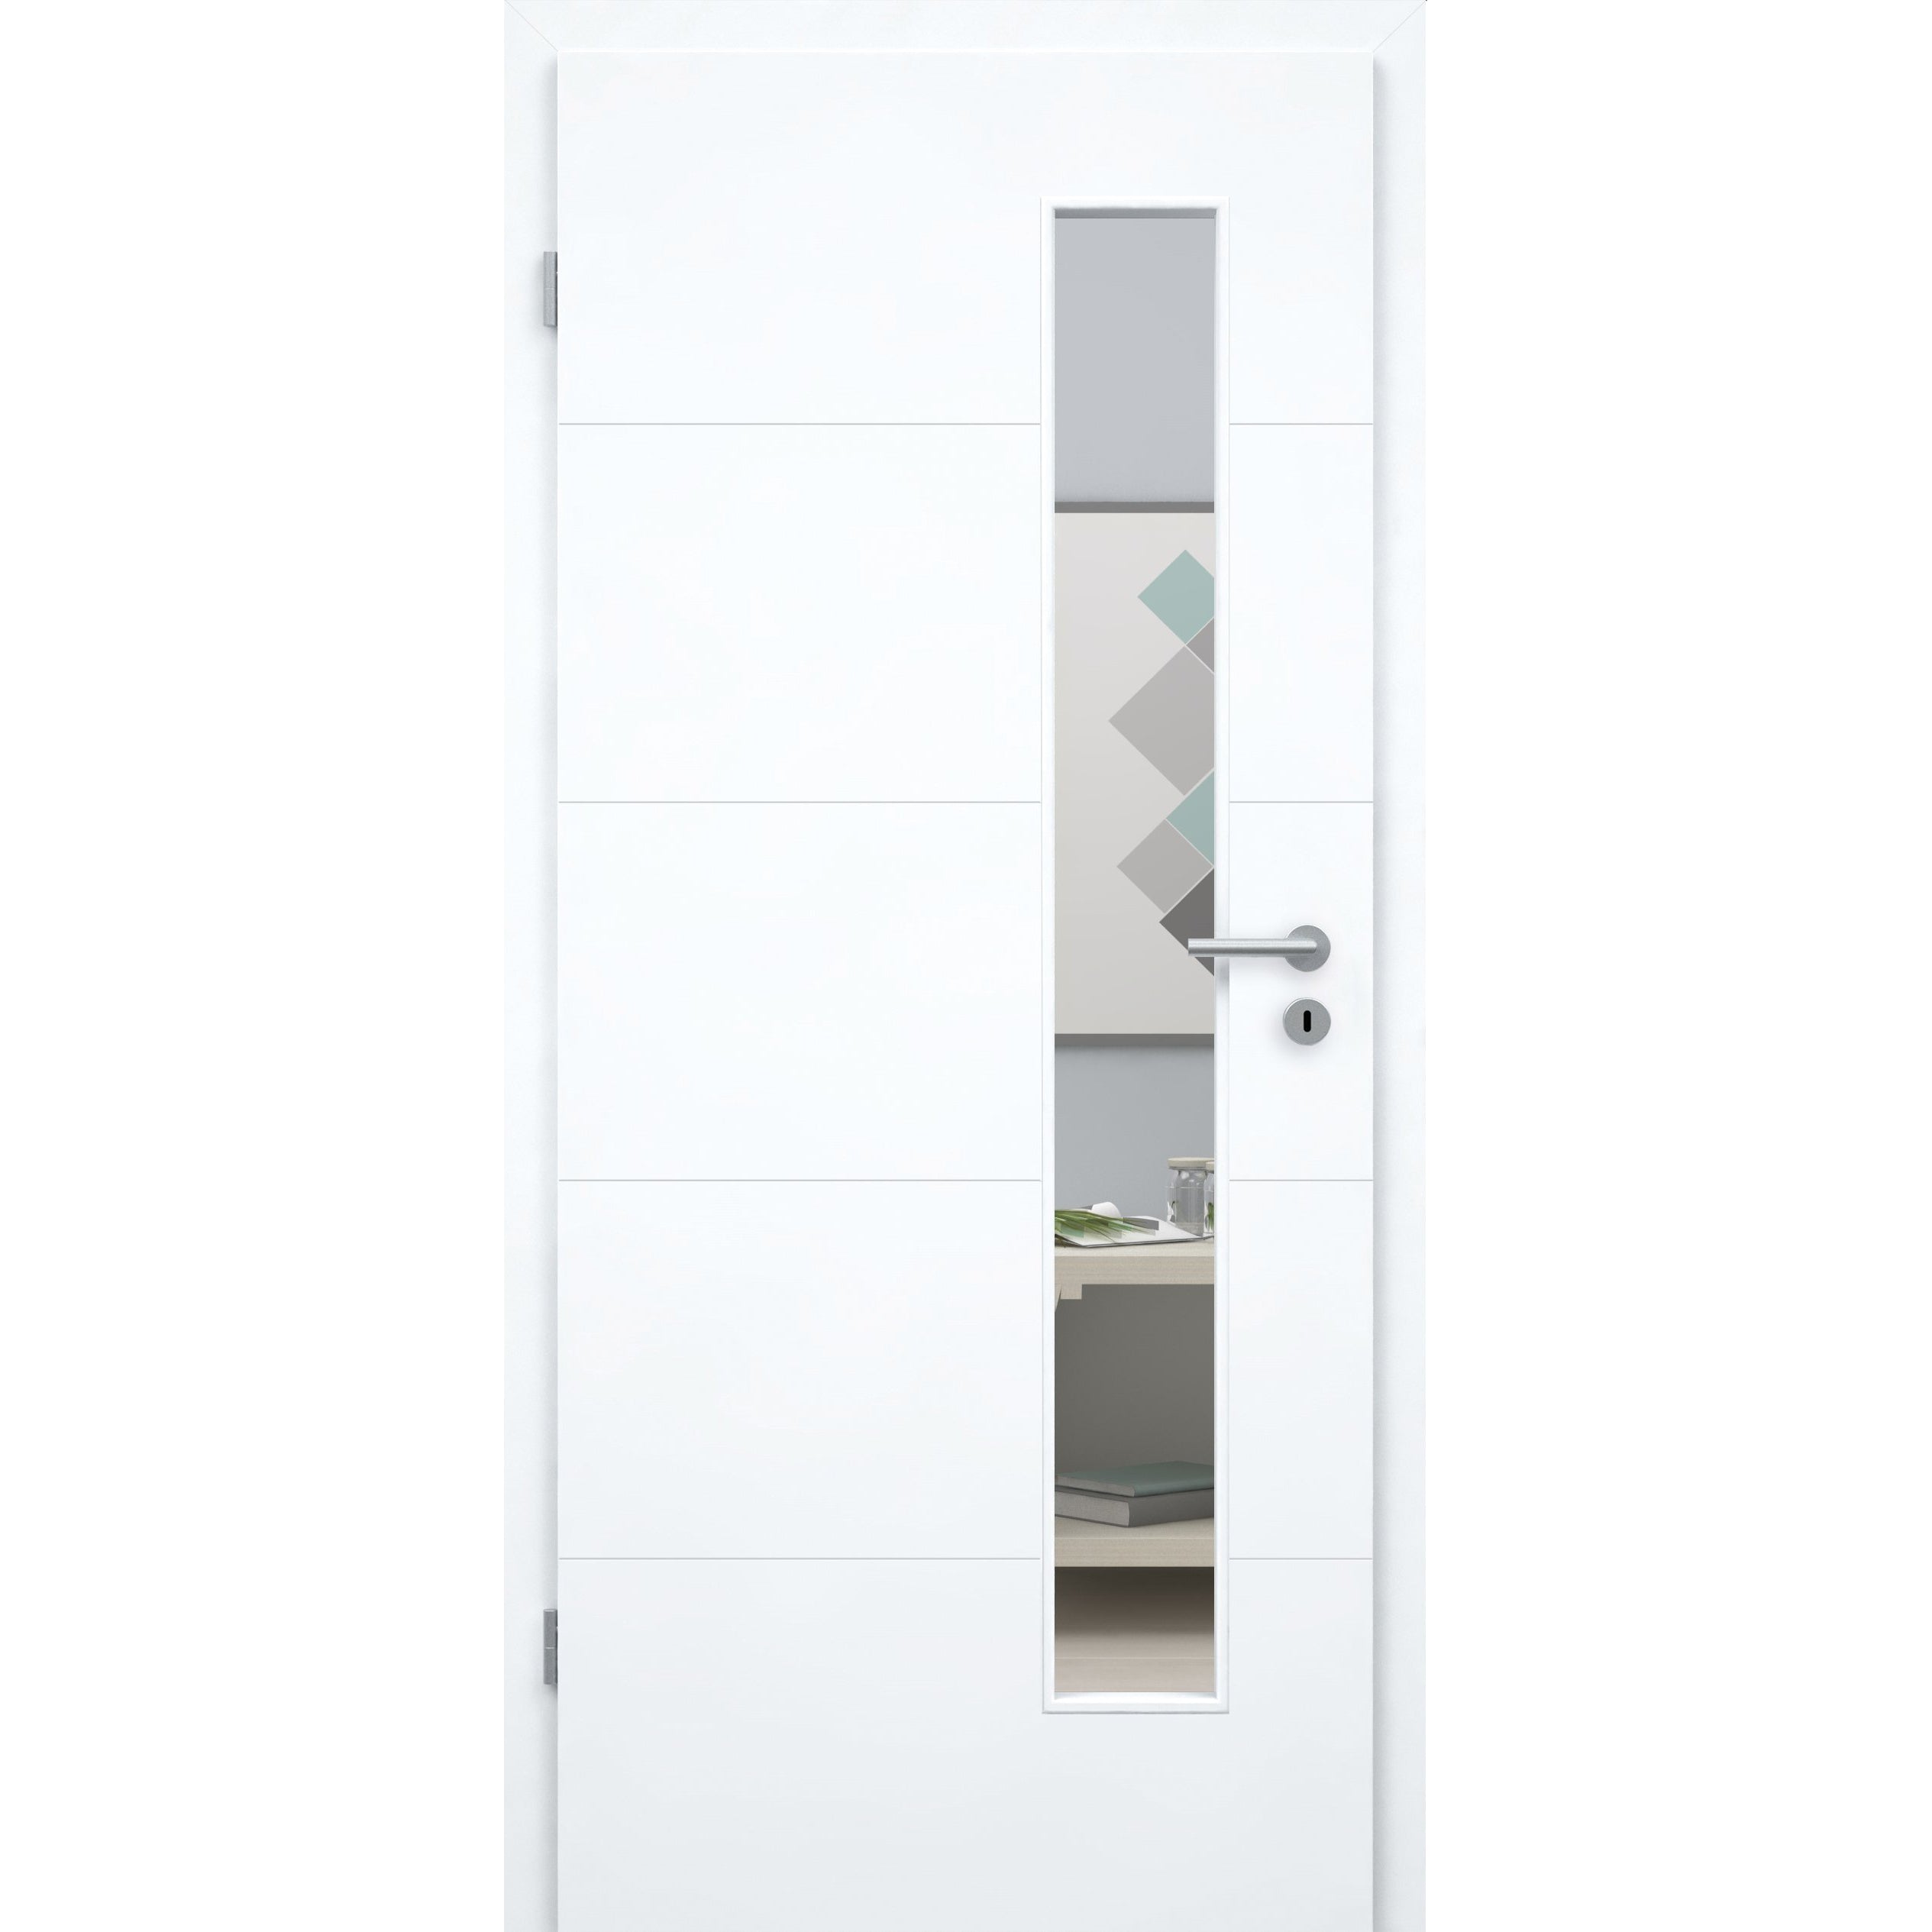 Zimmertür mit Zarge und Lichtausschnitt brillant-weiß 4 Rillen Designkante - Modell Designtür Q43LAS